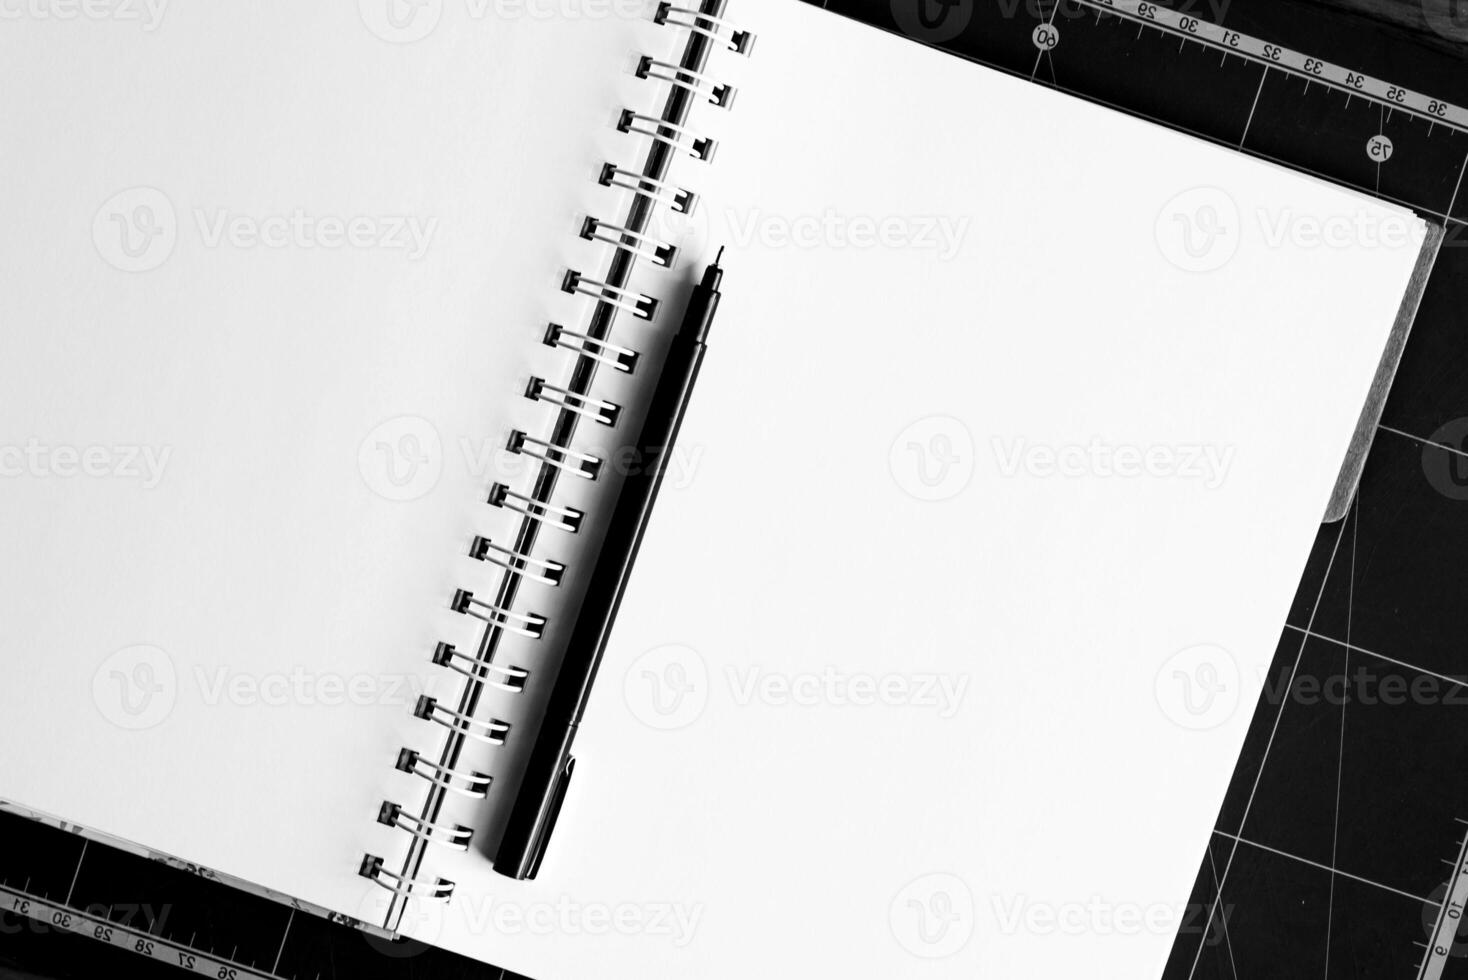 leeg notitieboekje mockup sjabloon voor banners en andere ontwerp doeleinden, leeg blanco papieren foto